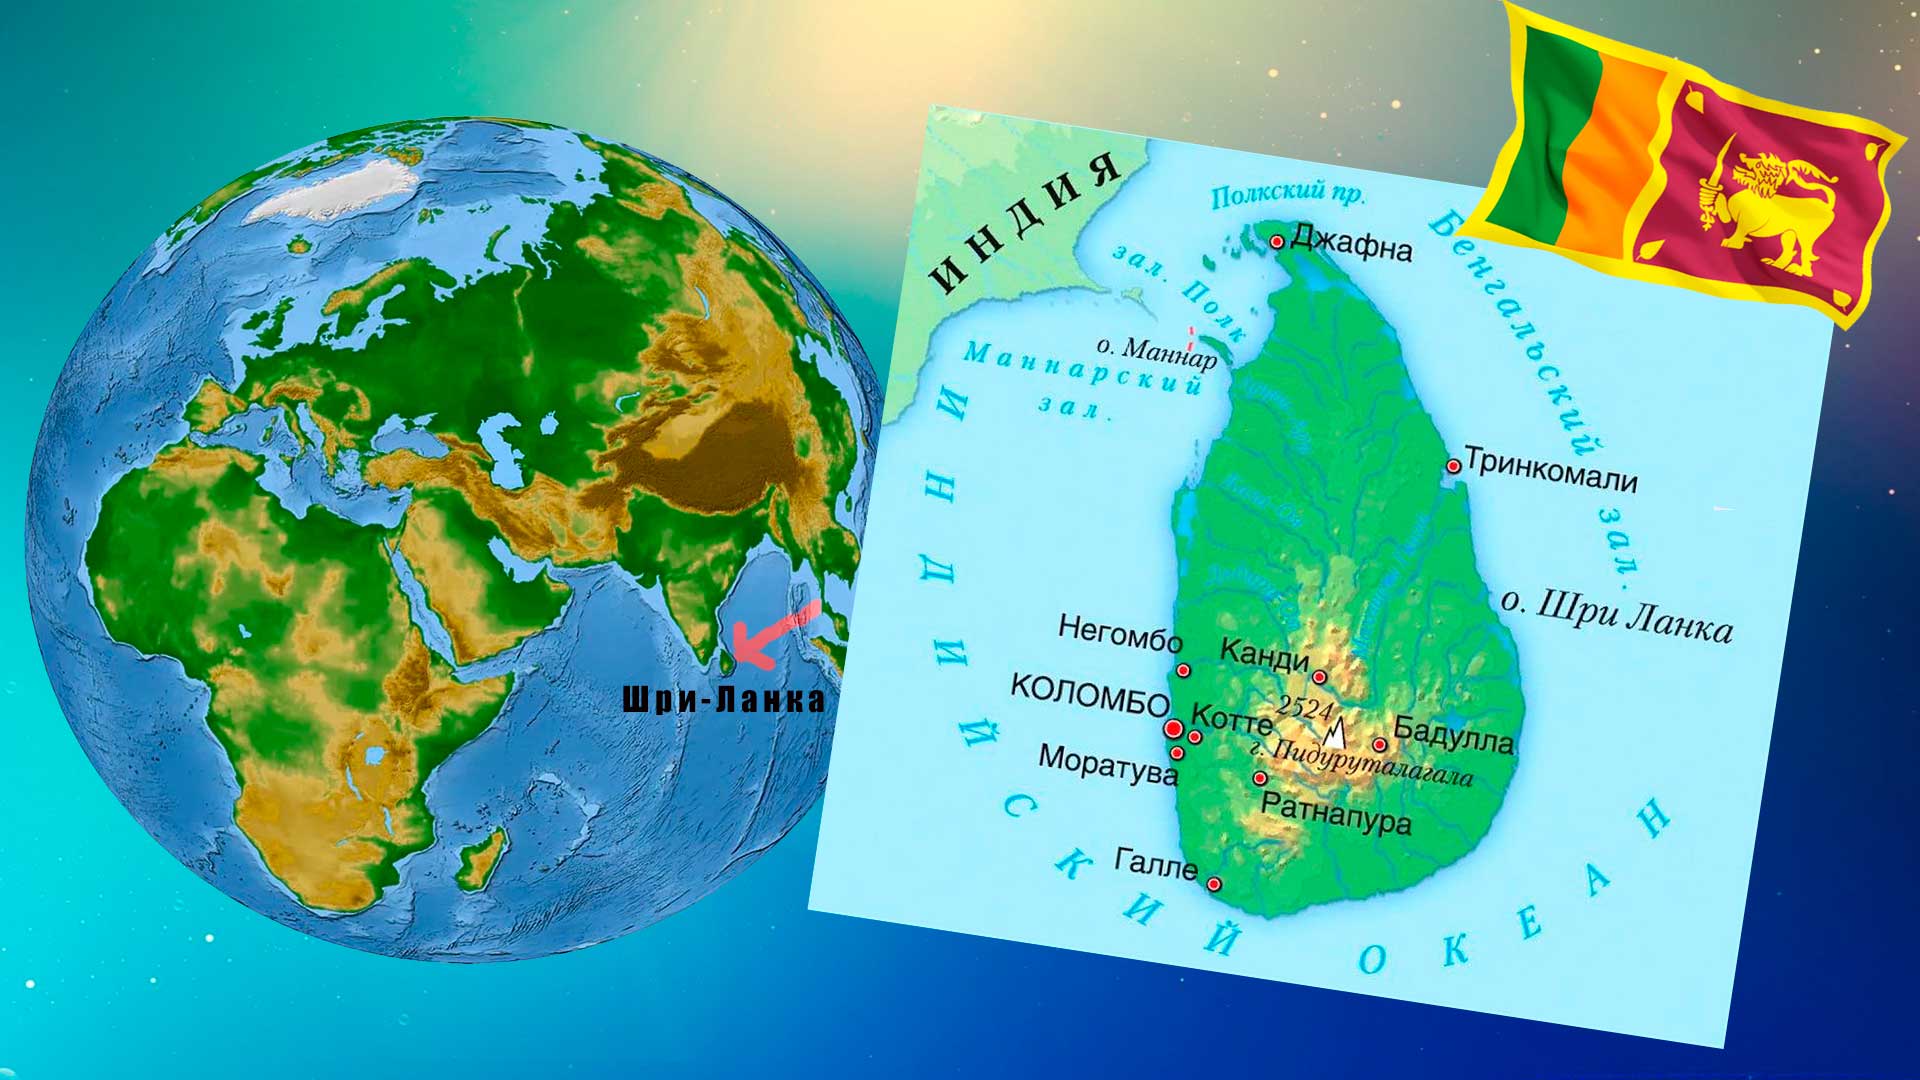 Шри-Ланка на карте мира.